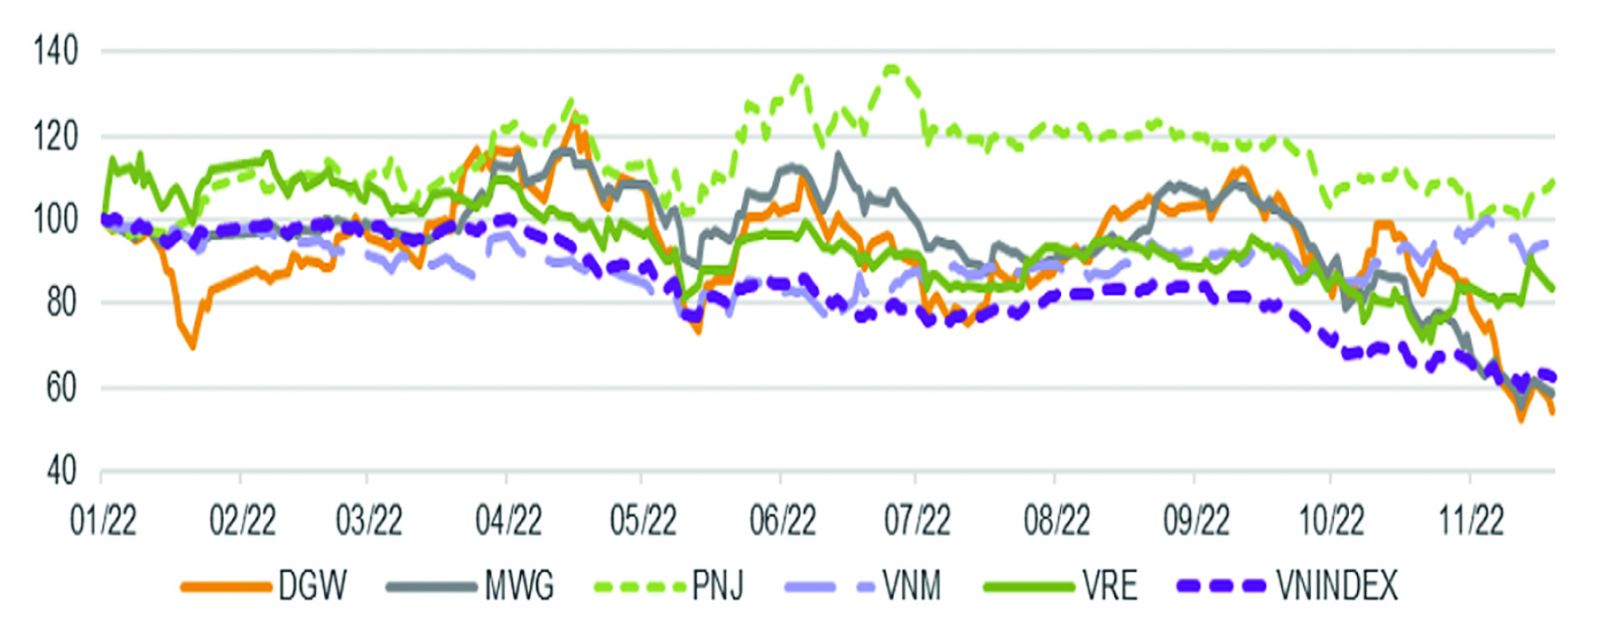  Tăng trưởng giá một số cổ phiếu bán lẻ và VN-Index trong năm 2022.p/Nguồn: VNDirect, Bloomberg